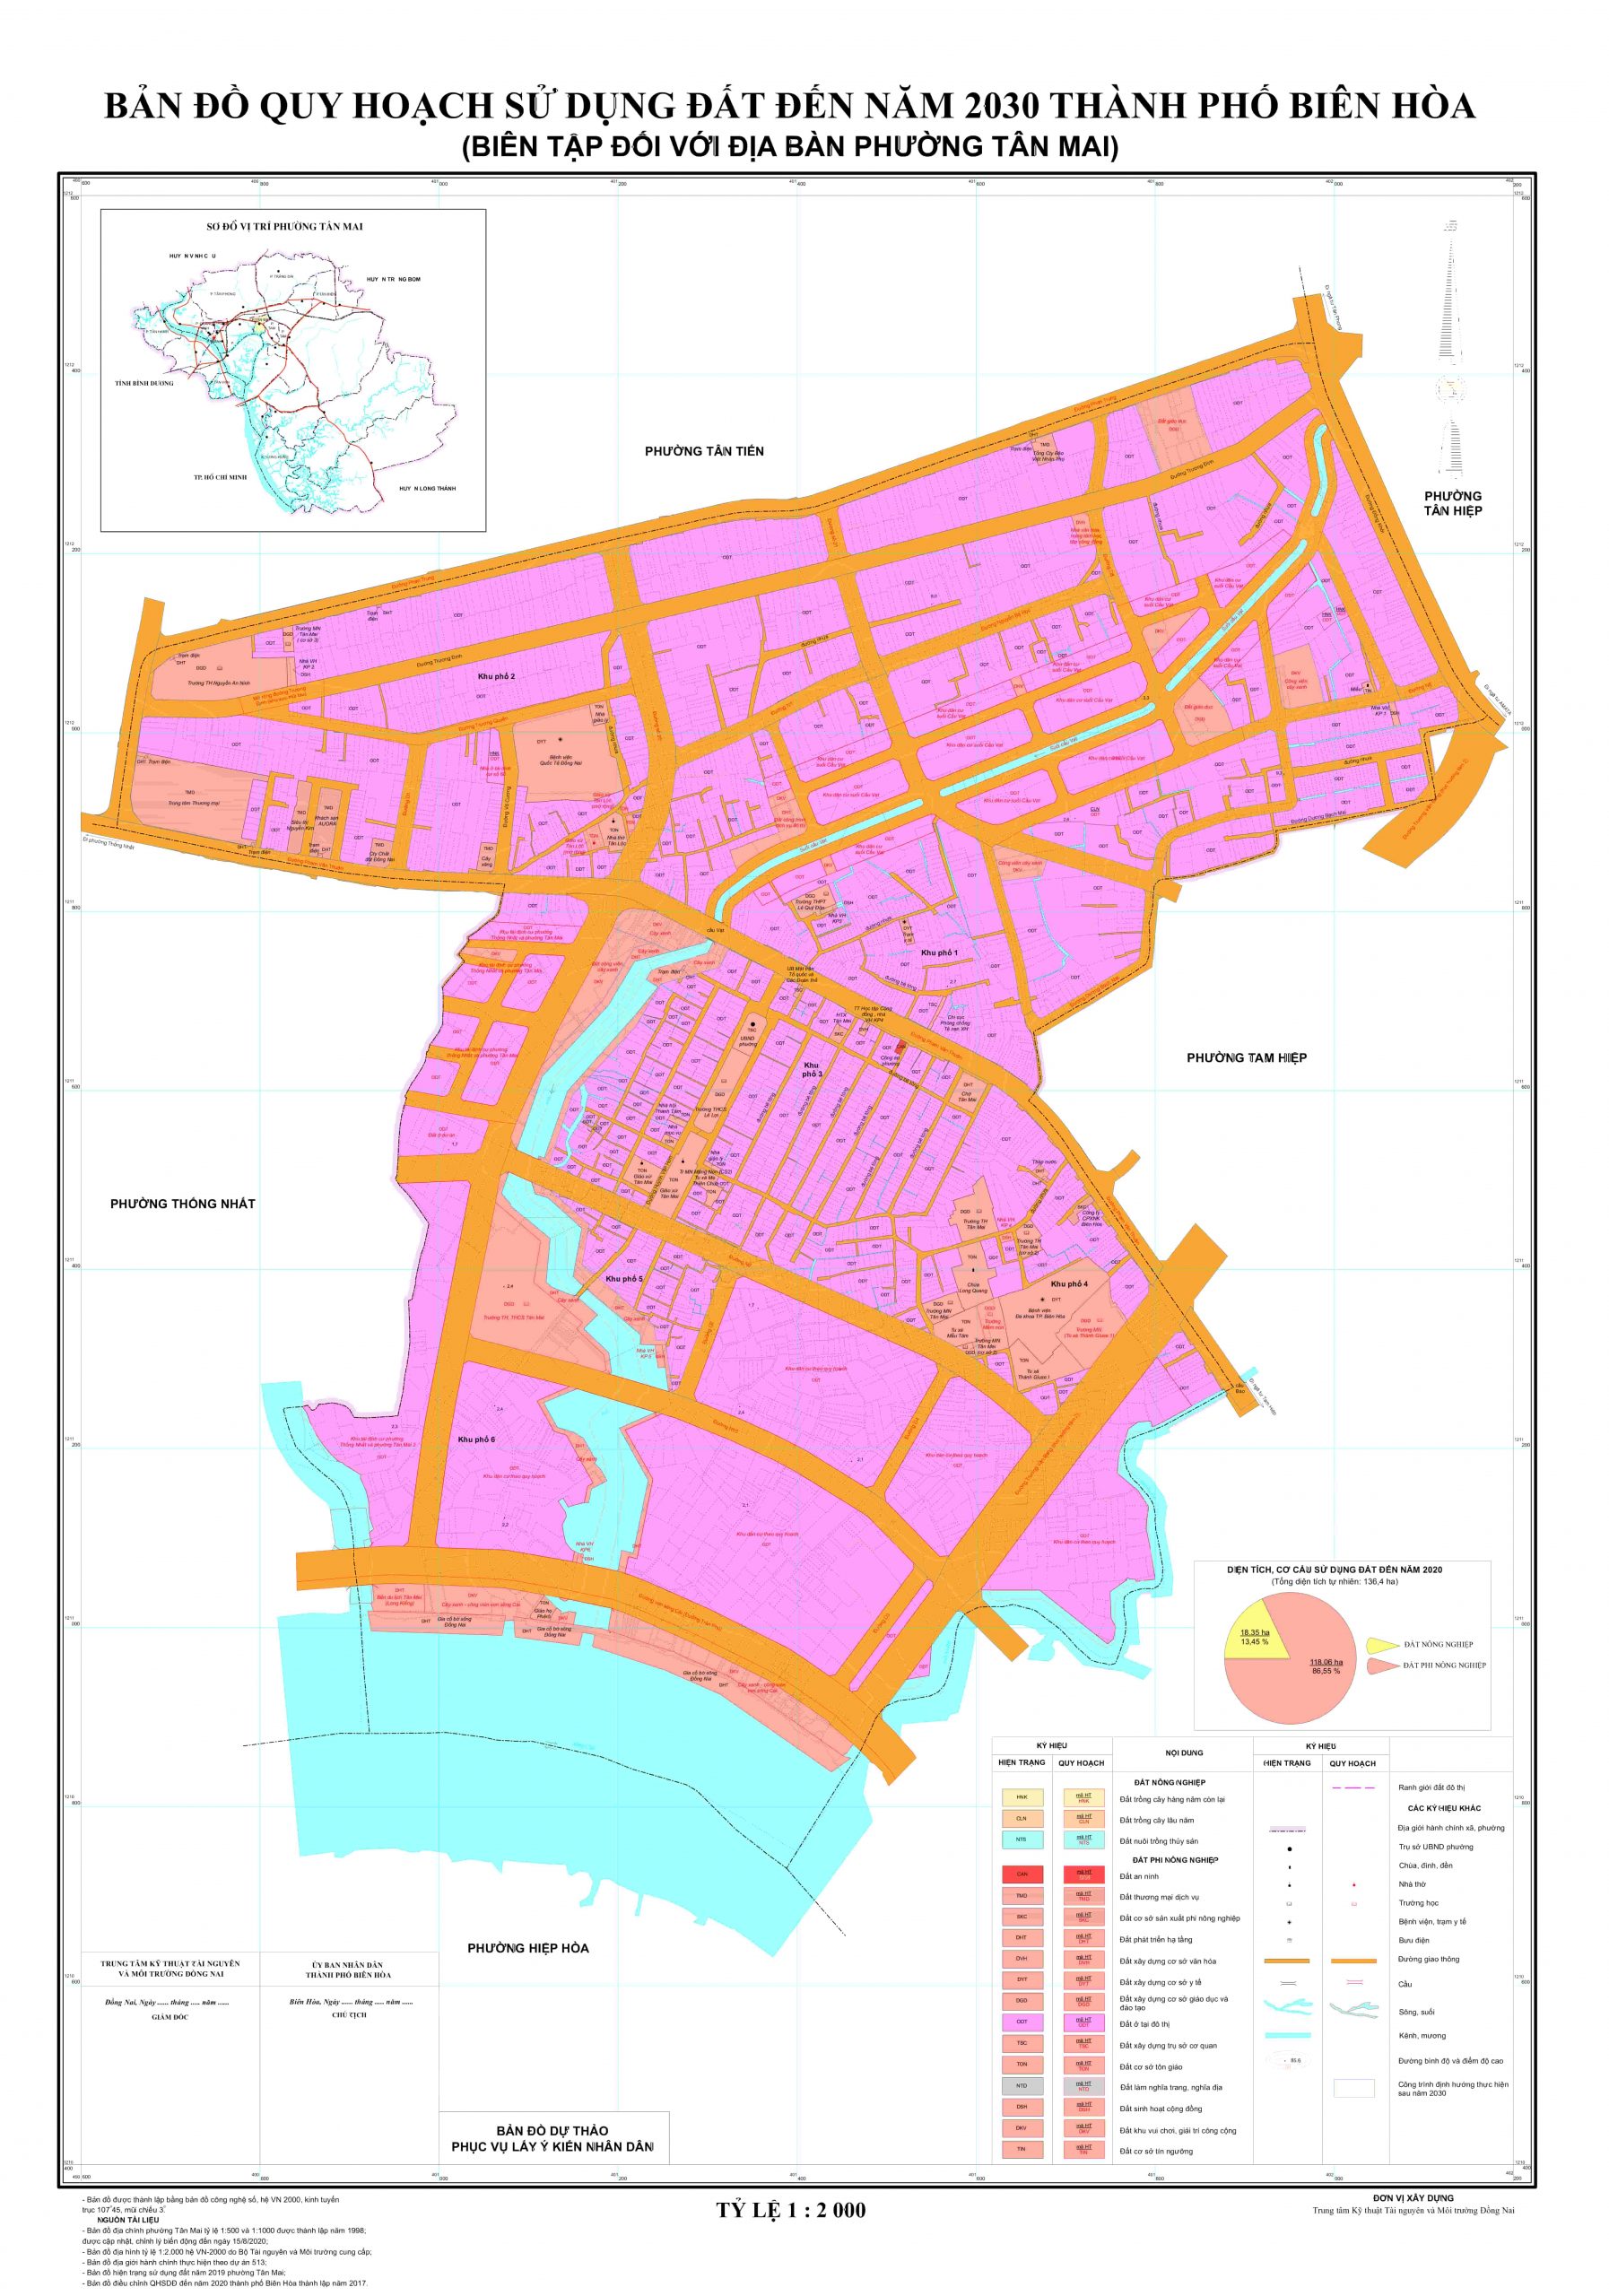 Bản đồ quy hoạch 2024: Bản đồ quy hoạch 2024 sẽ giúp bạn dễ dàng tìm hiểu về các kế hoạch phát triển đô thị và quy hoạch đất đai trong tương lai. Được thiết kế với các công nghệ tiên tiến, bản đồ sẽ cung cấp cho bạn thông tin chính xác và cập nhật về các dự án phát triển mới.